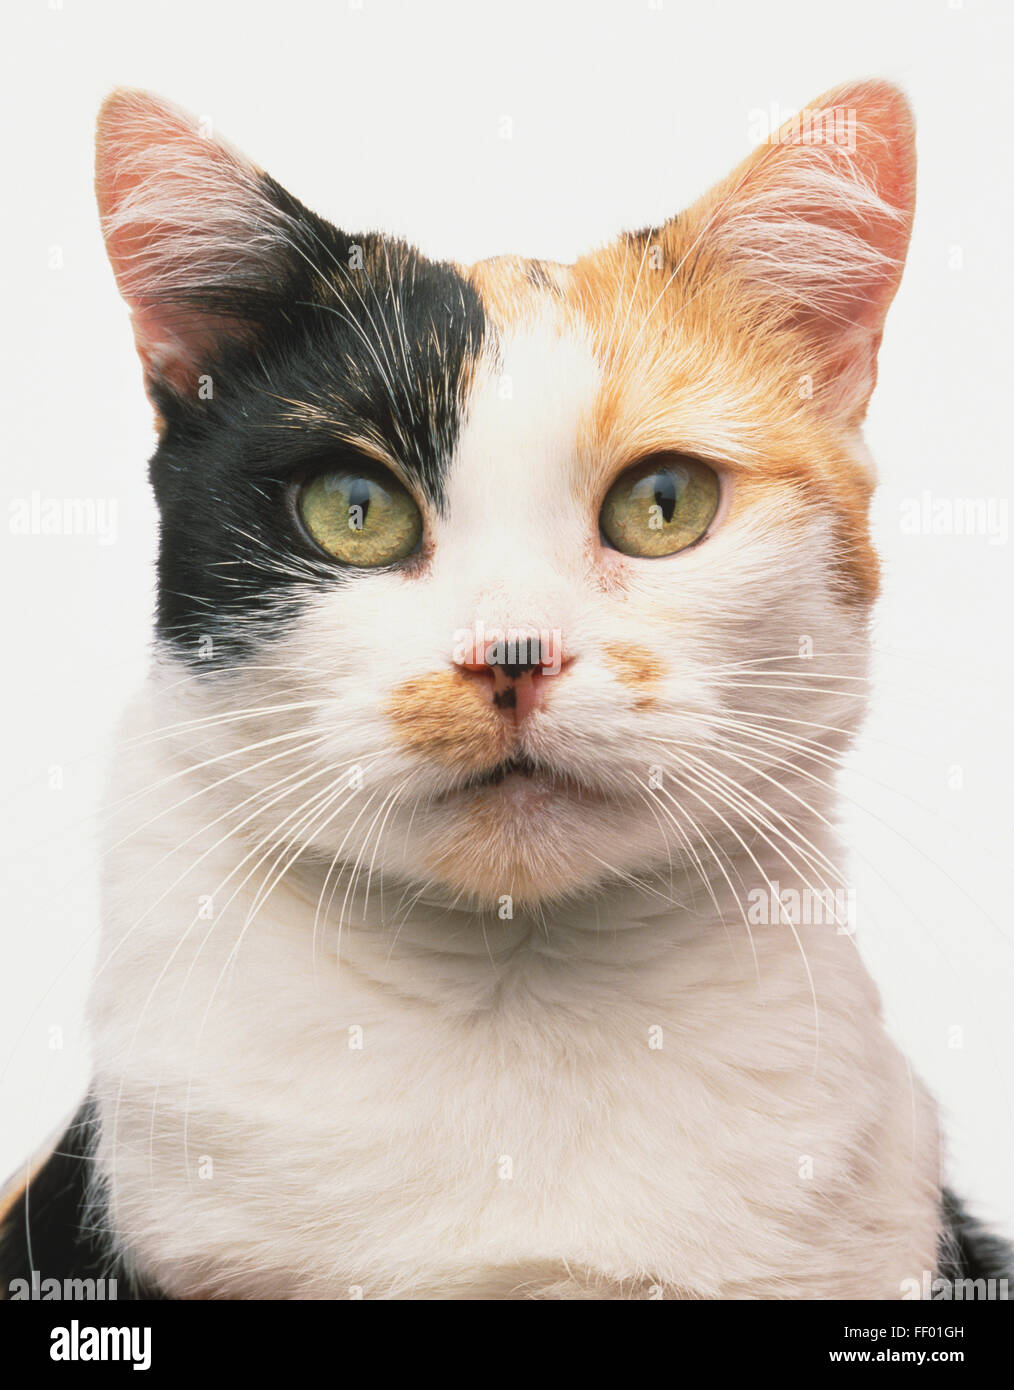 Visage d'une écaille et blanc Manx chat (Felis catus) Banque D'Images